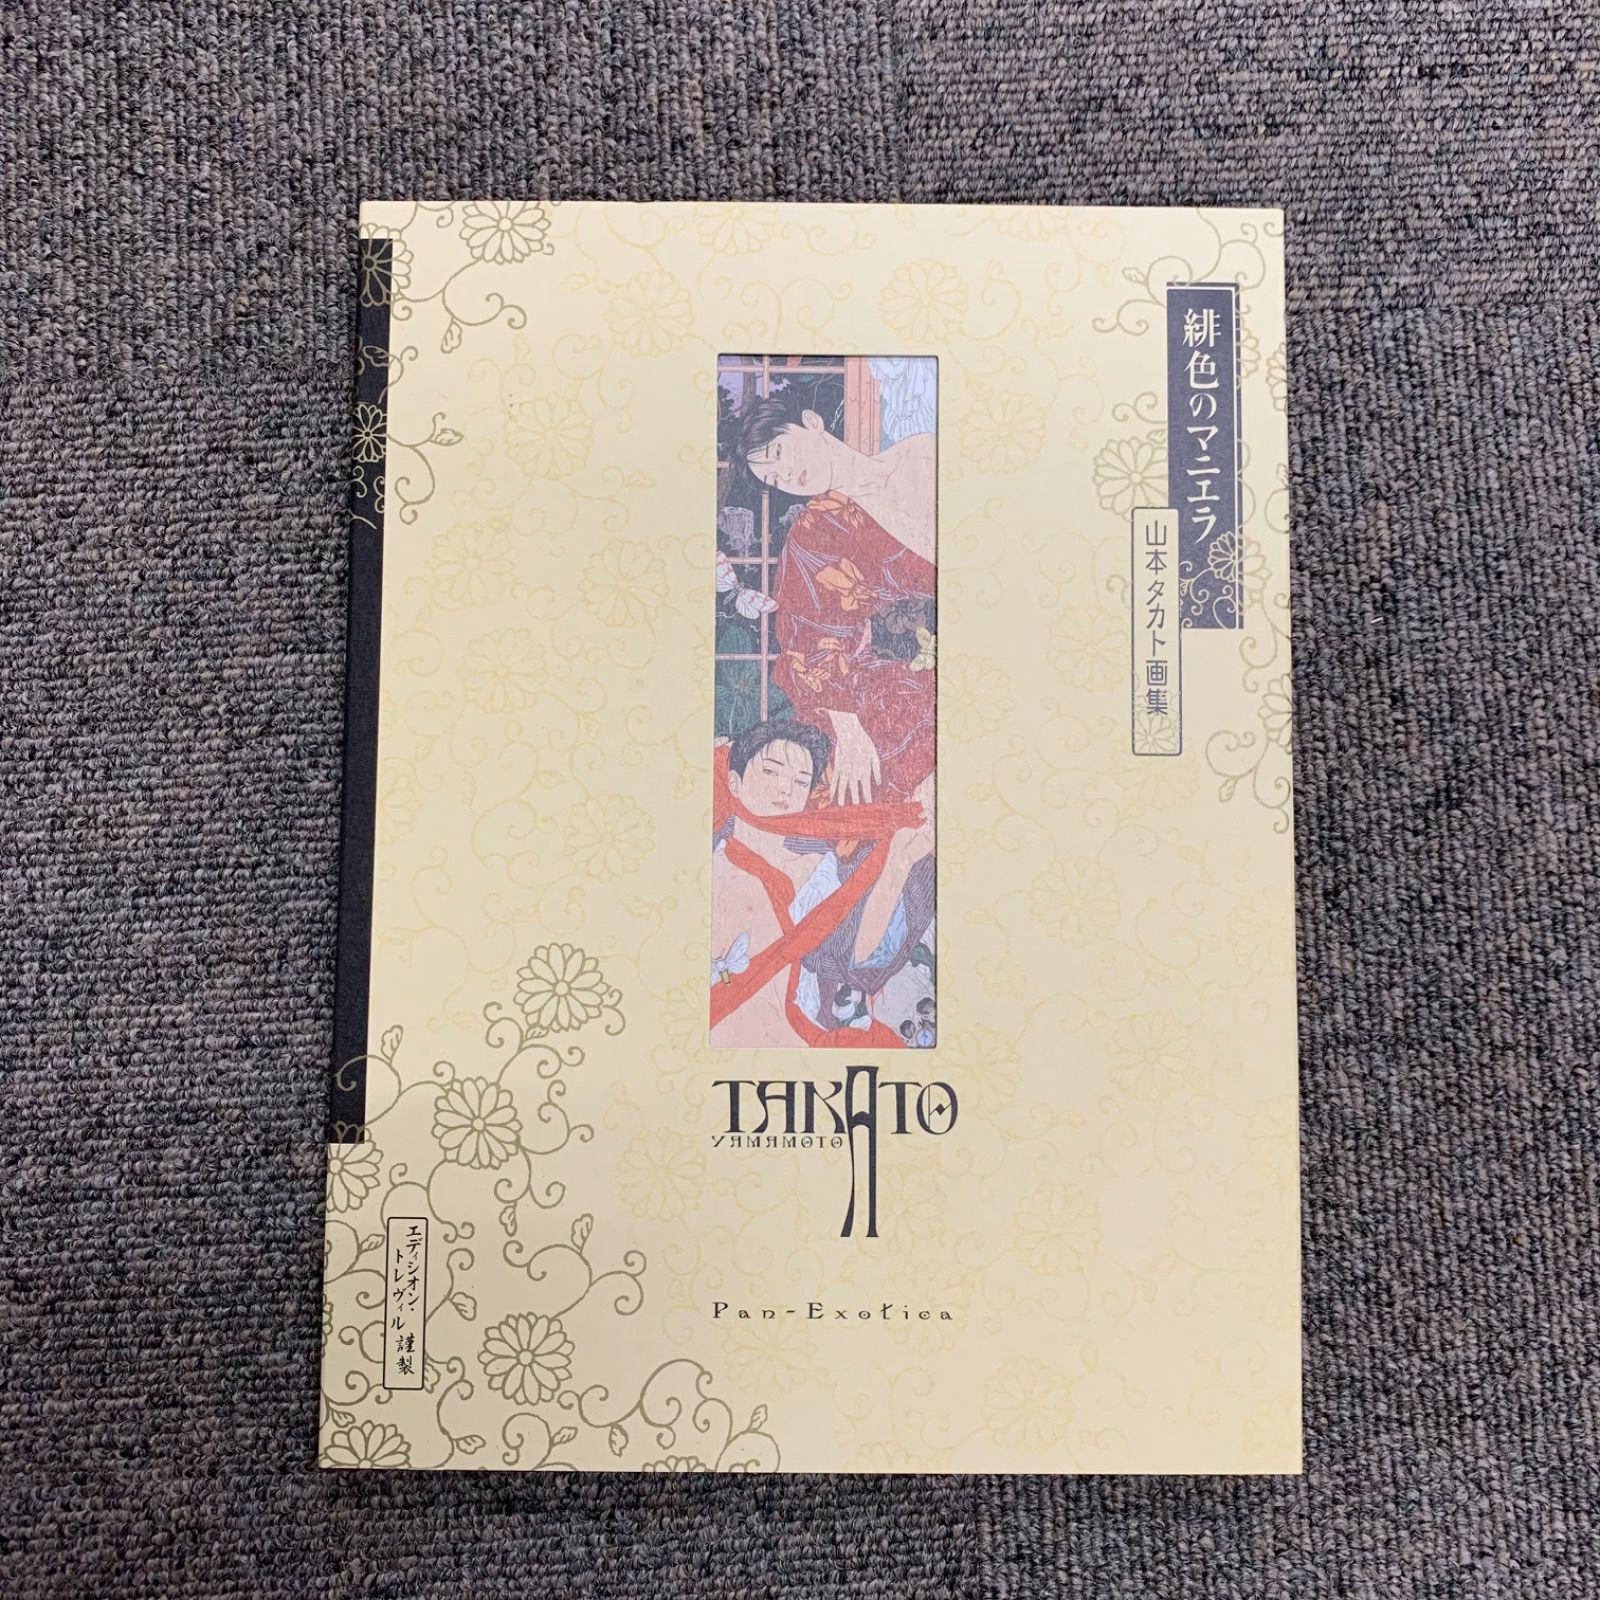 緋色のマニエラ 山本タカト画集 300部限定 20周年記念版 ポスト